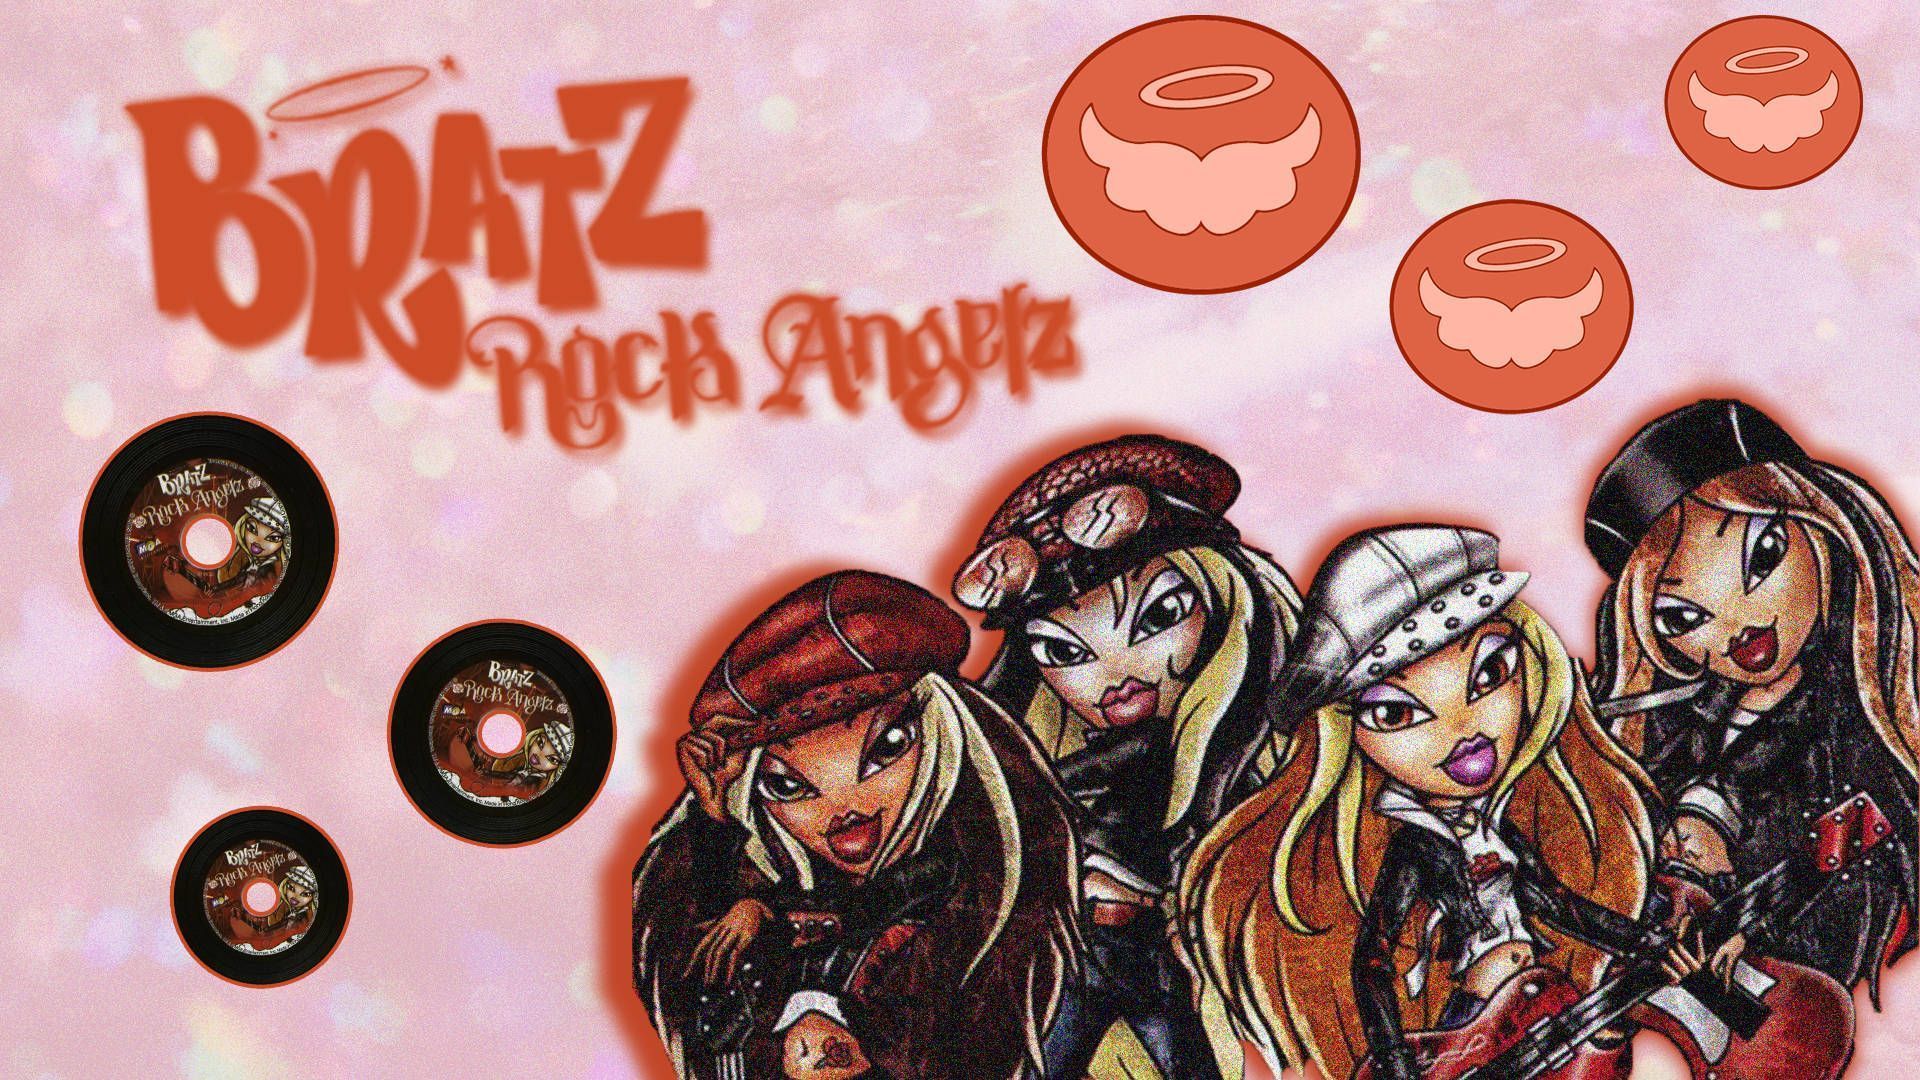 Download Girl Band Bratz Aesthetic Rock Angelz Wallpaper